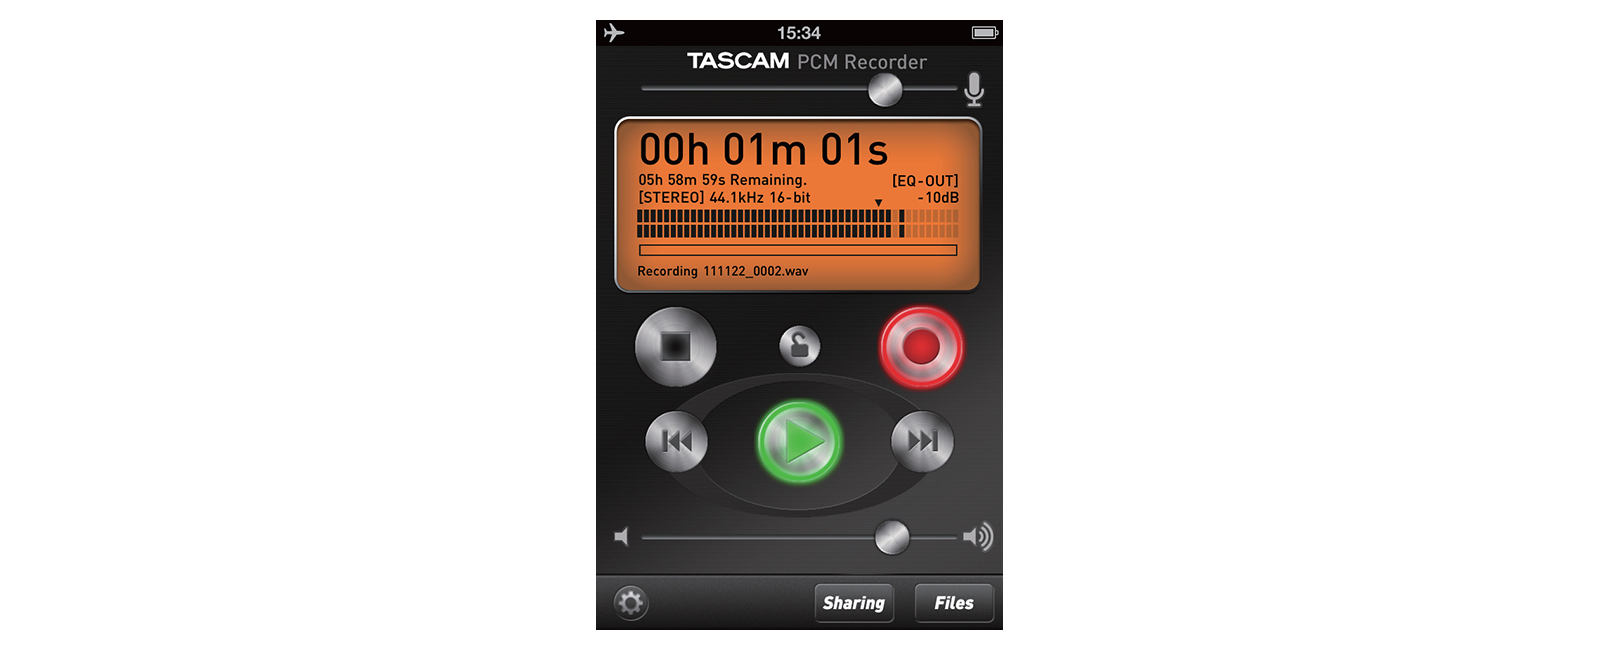 TASCAM PCM Recorder